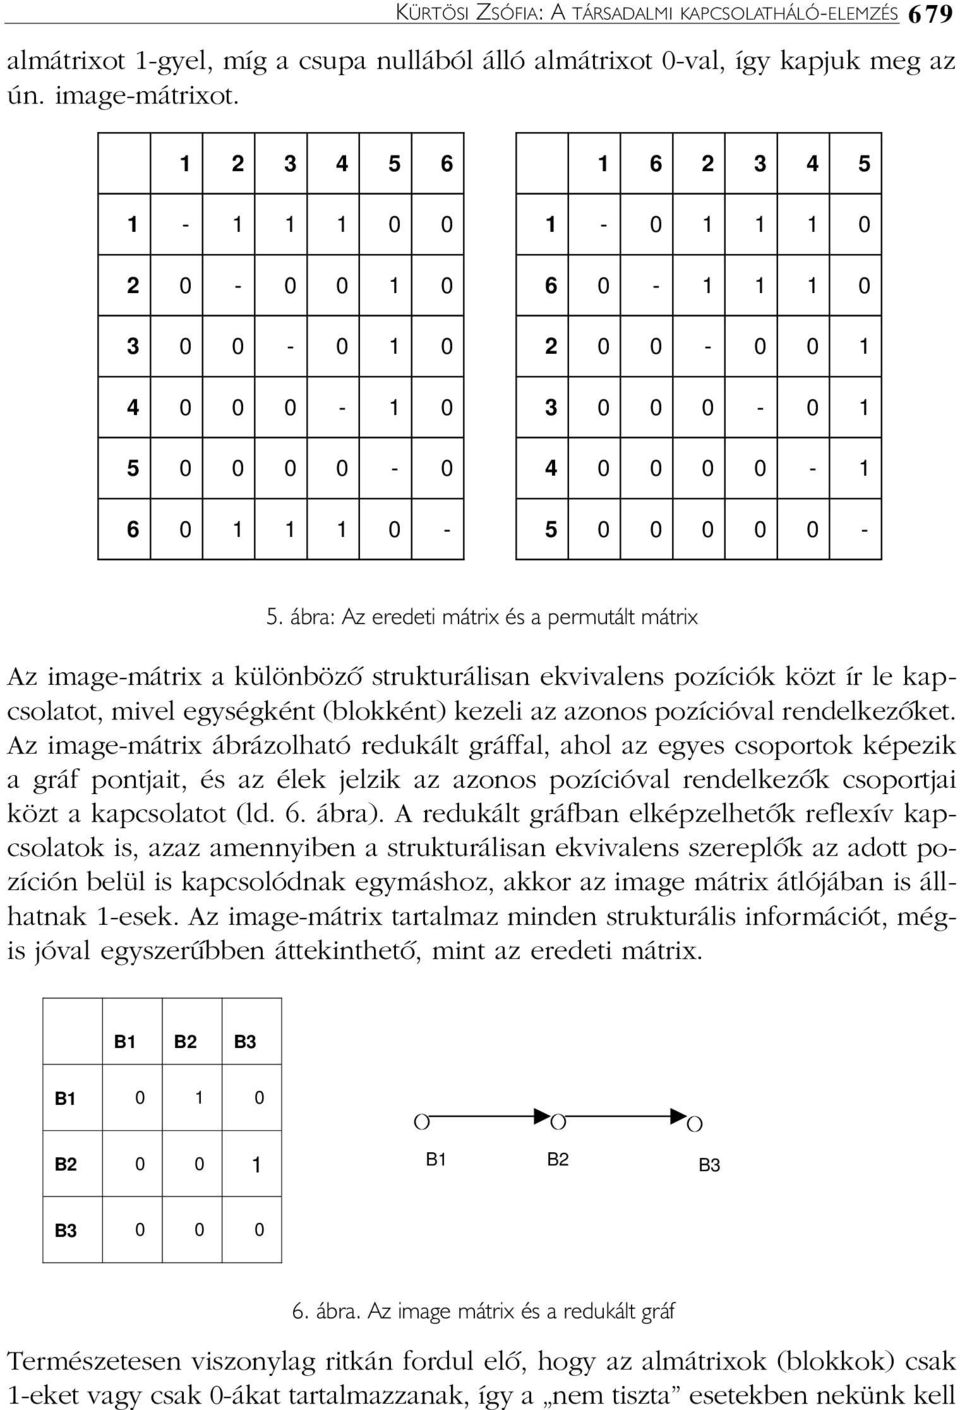 ábra: Az eredeti mátrix és a permutált mátrix Az image-mátrix a különbözõ strukturálisan ekvivalens pozíciók közt ír le kapcsolatot, mivel egységként (blokként) kezeli az azonos pozícióval